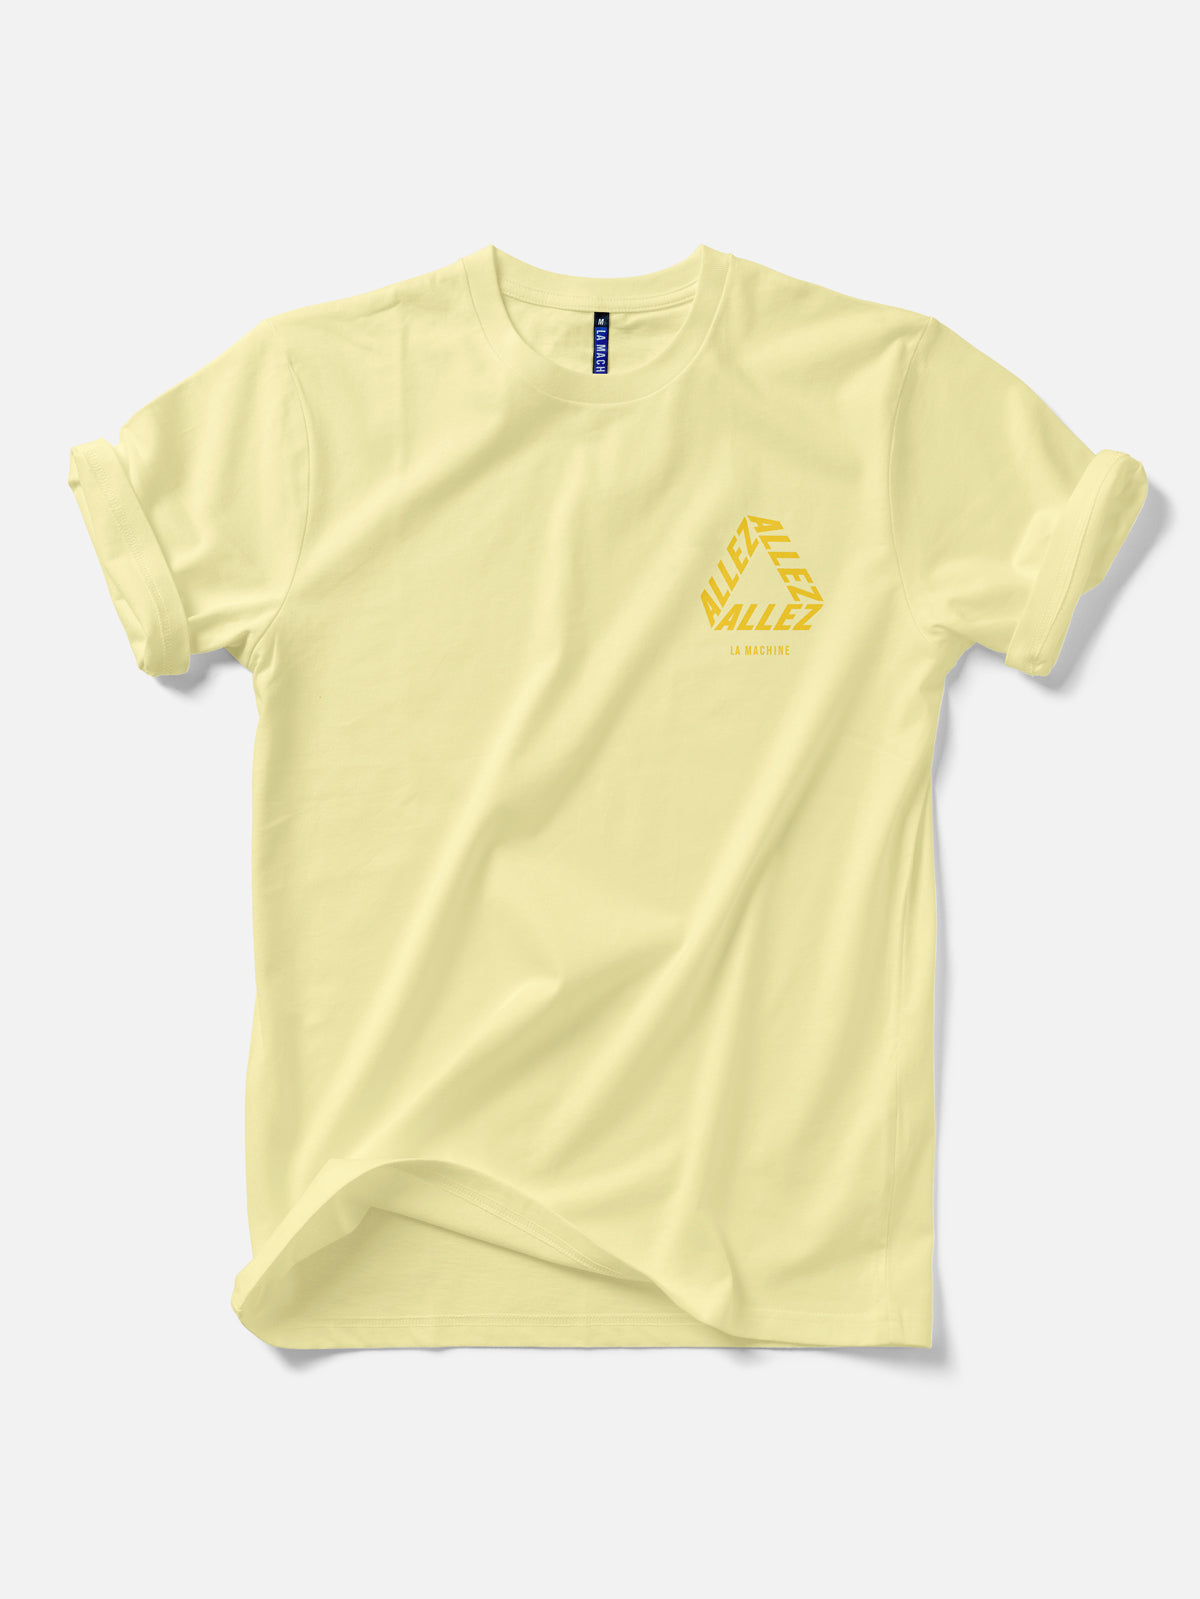 Allez - Relaxed Fit - Tour de France T-shirt